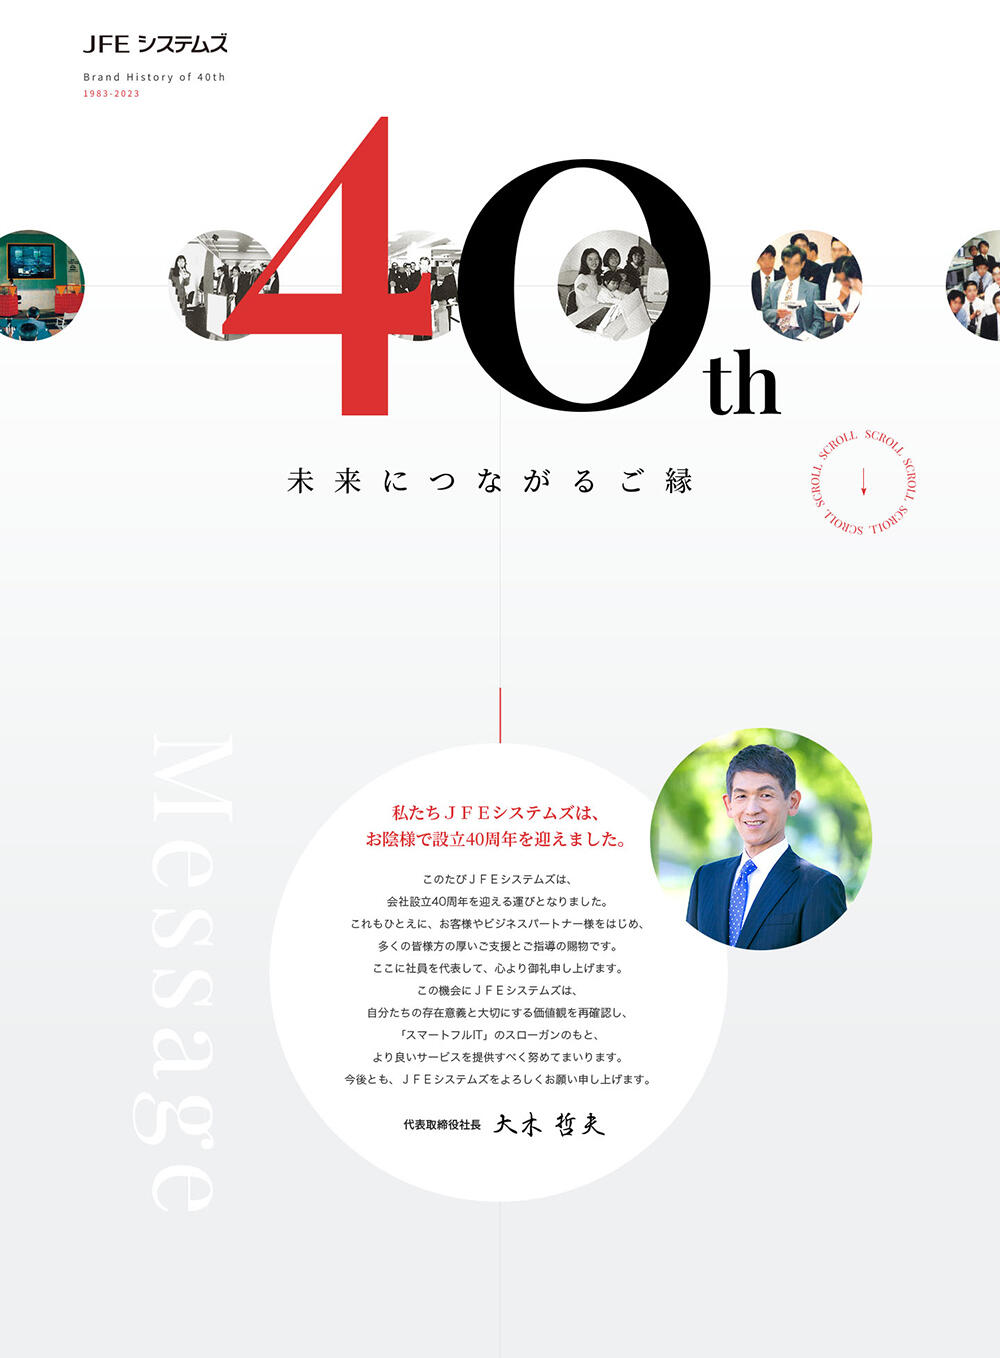 ＪＦＥシステムズ 設立40周年記念サイト